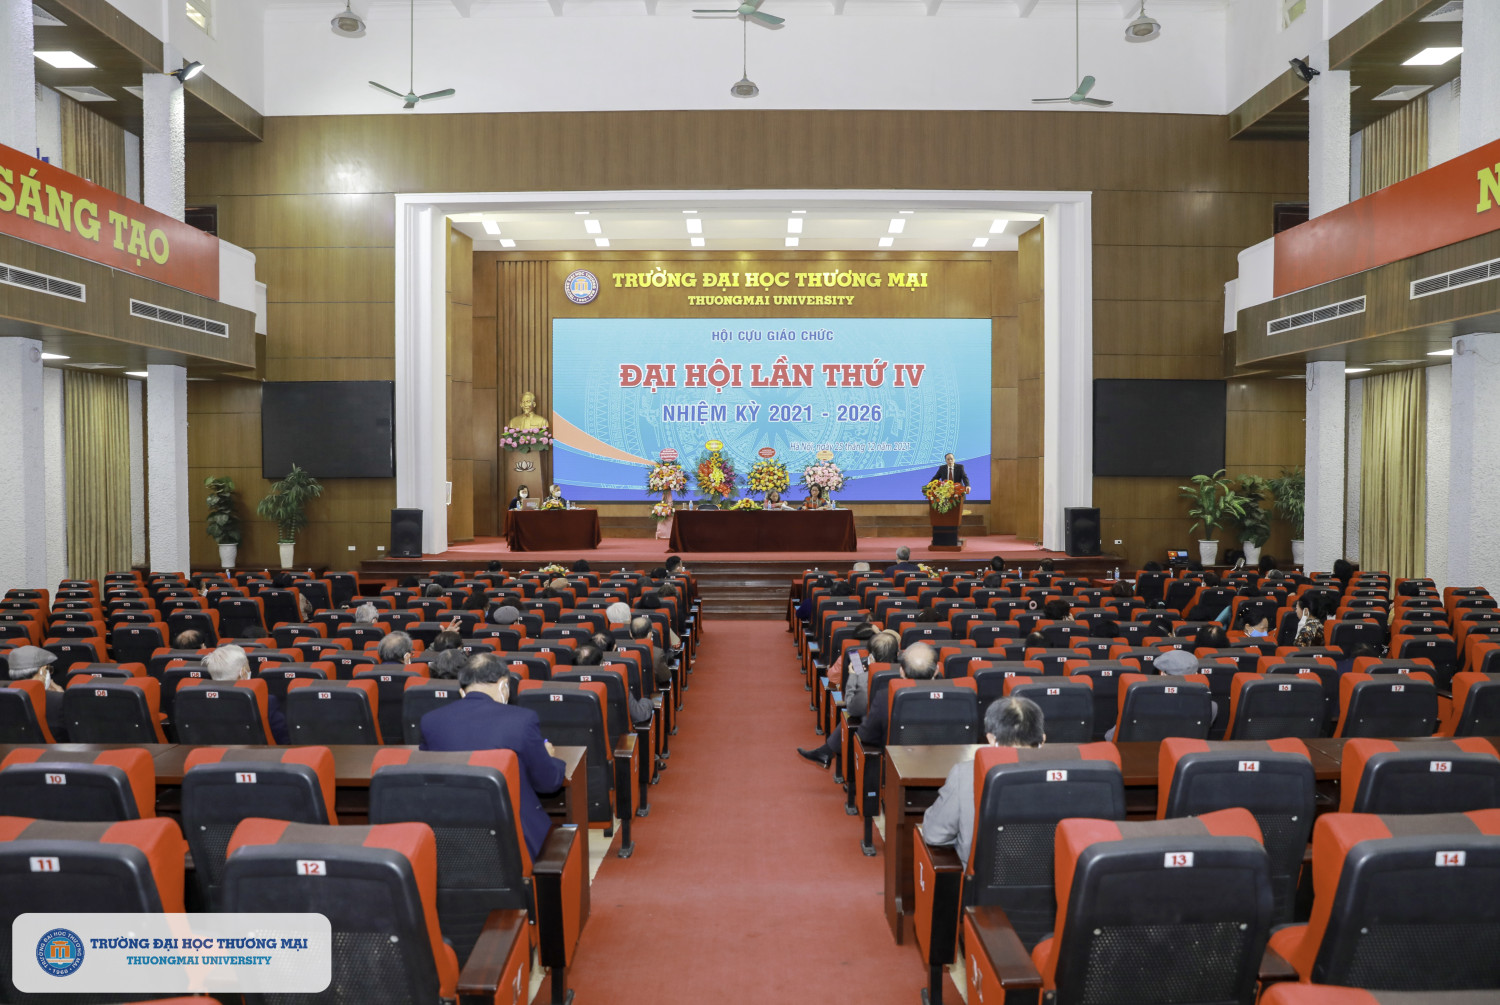 Đại hội đại biểu Hội Cựu giáo chức nhiệm kỳ 2021-2026